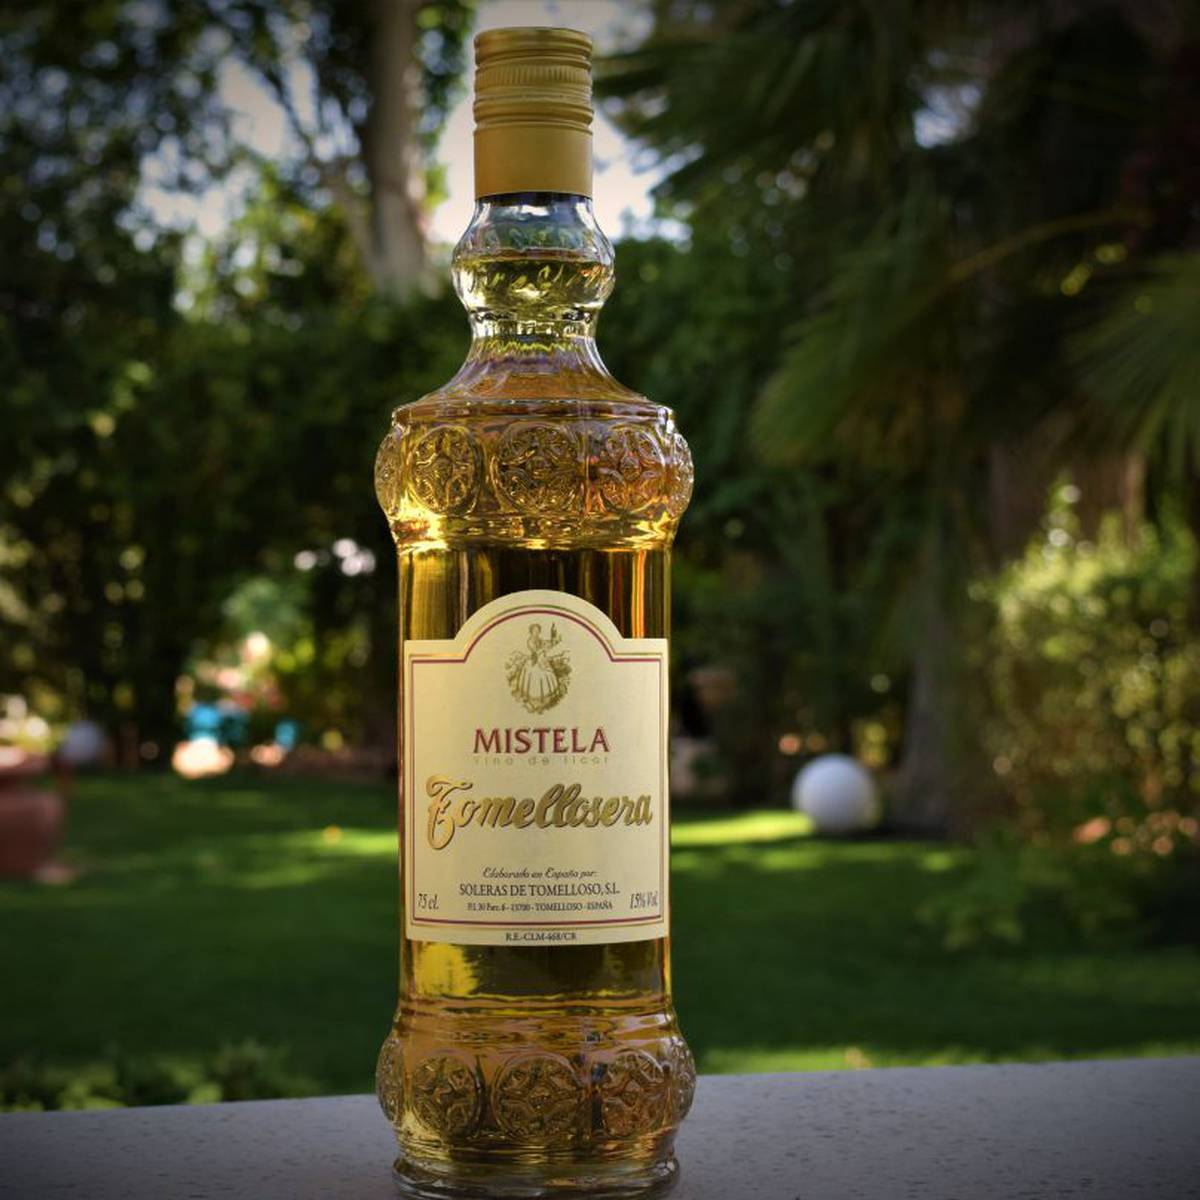 Botella de Mistela, alcohol típico de la comunidad valenciana.